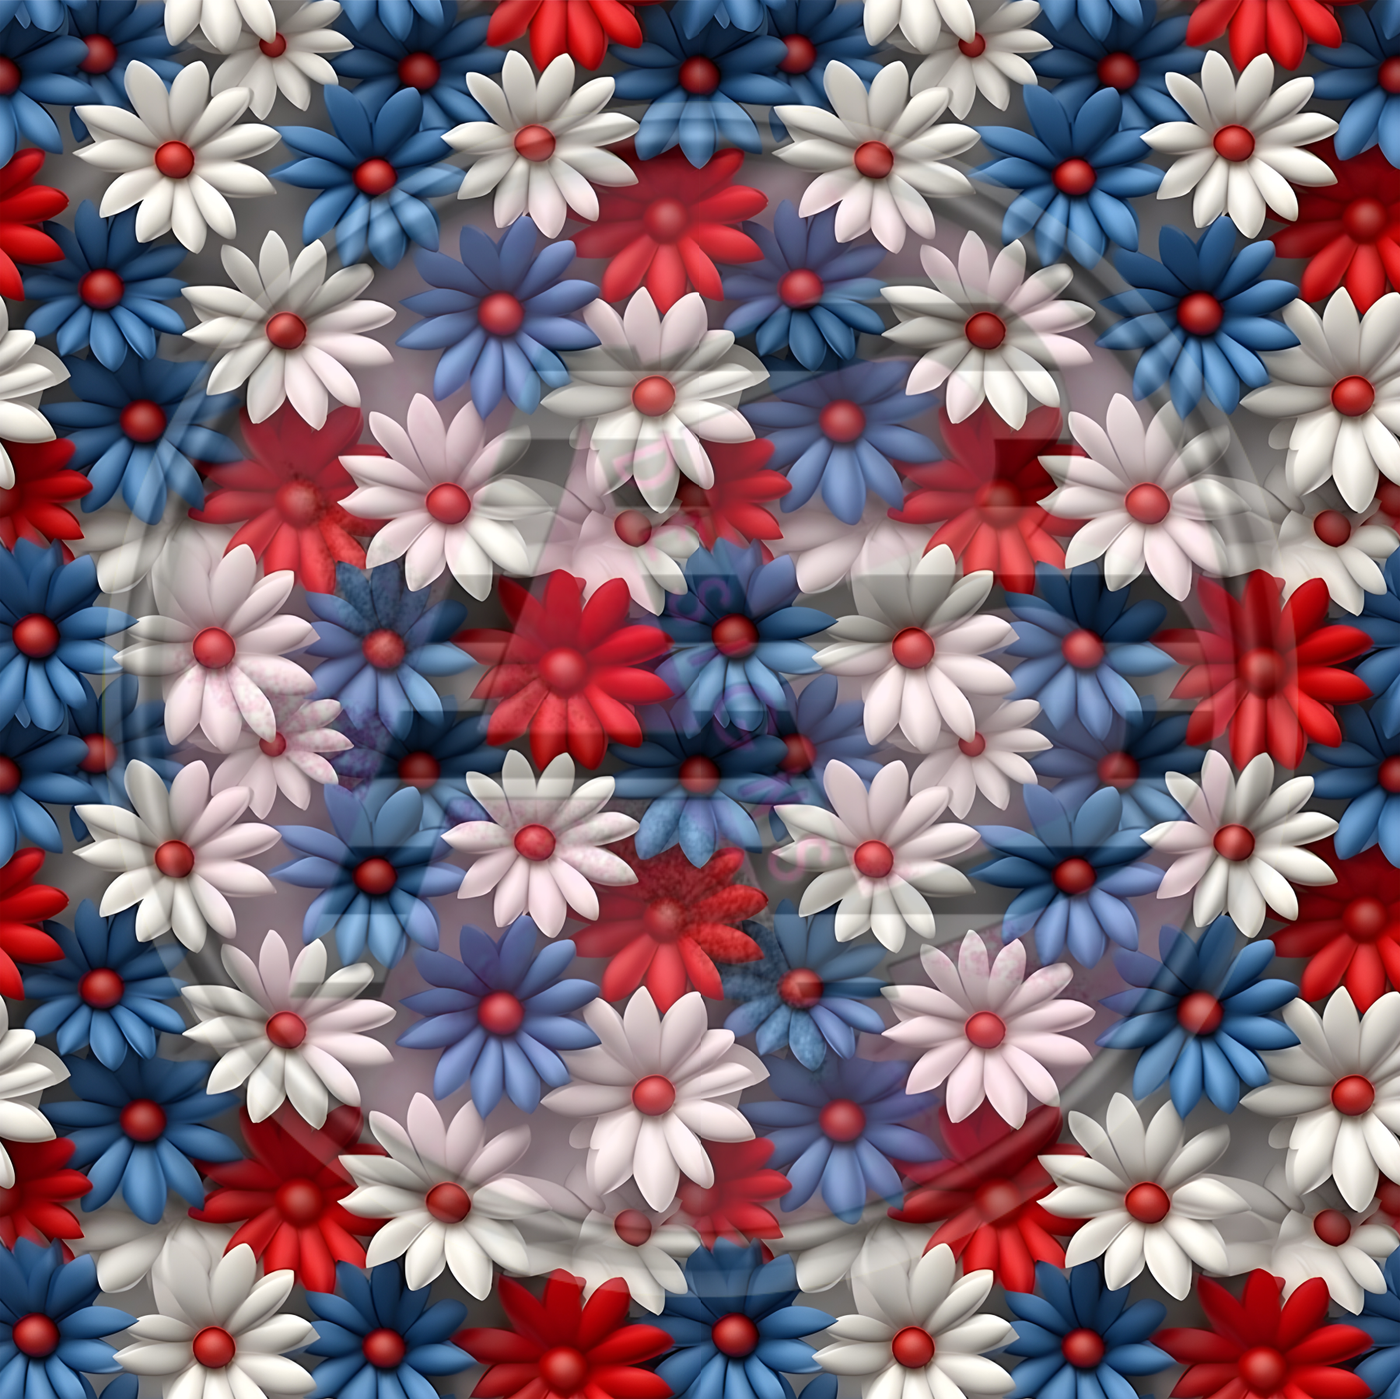 Adhesive Patterned Vinyl - Patriotic Floral 03